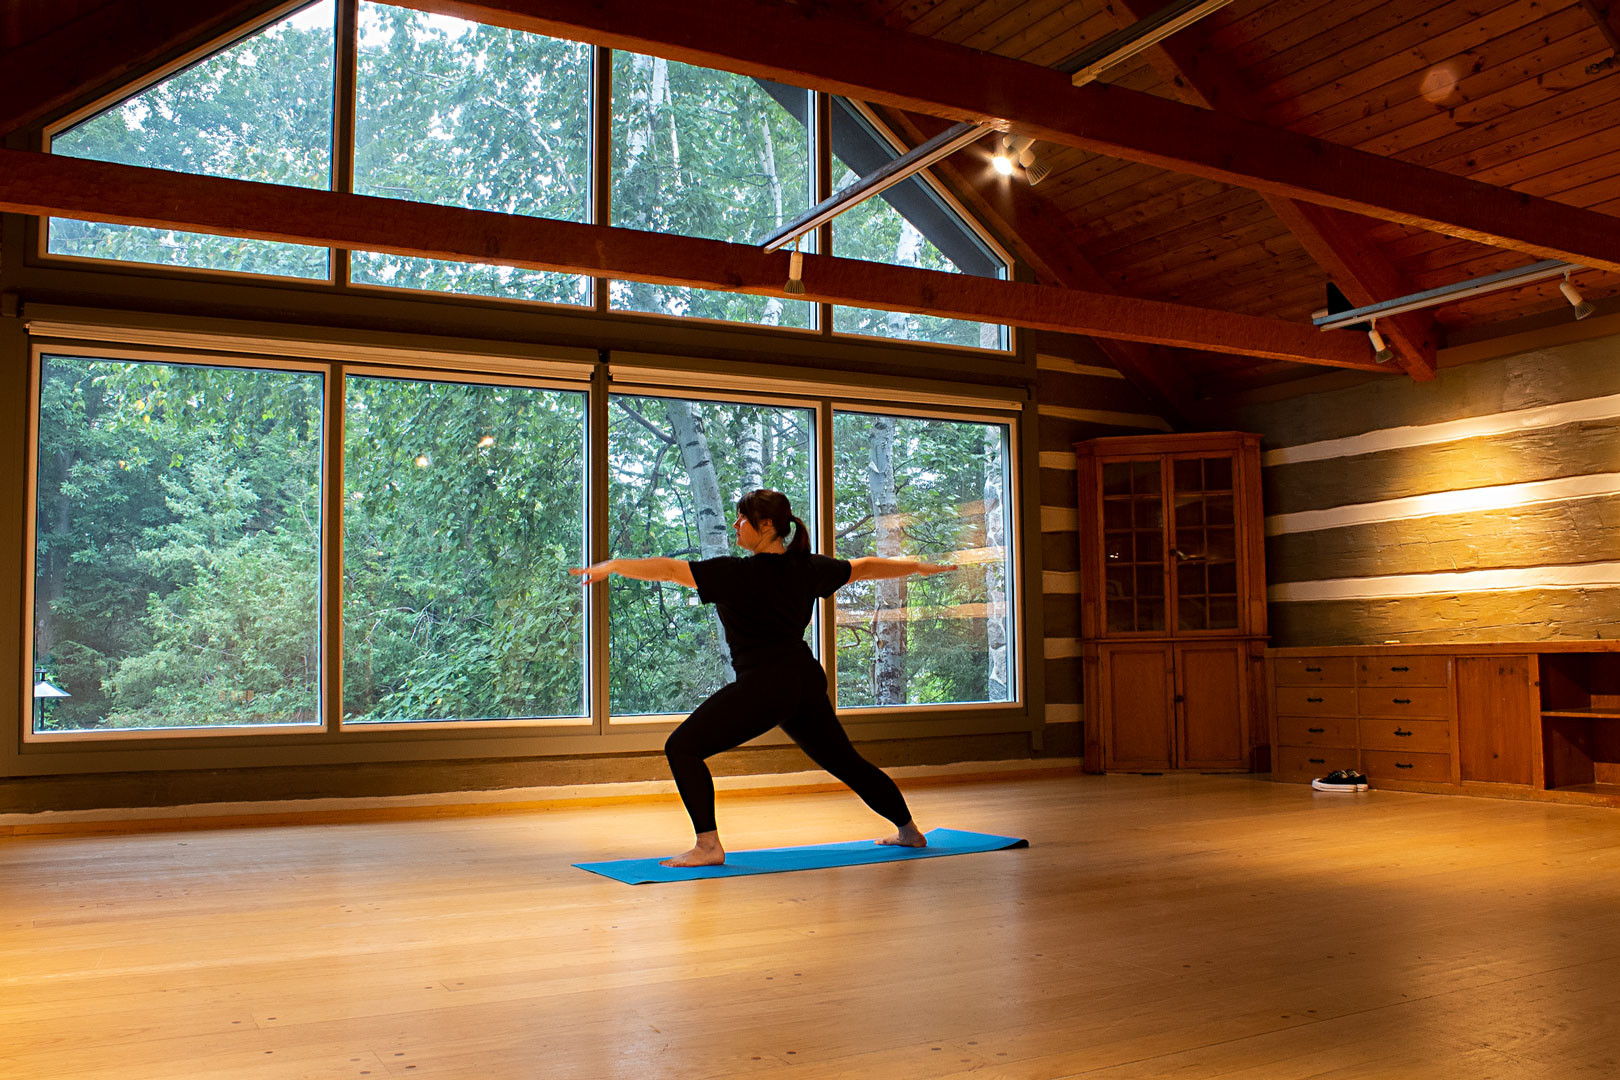 The Durham Yoga Studio